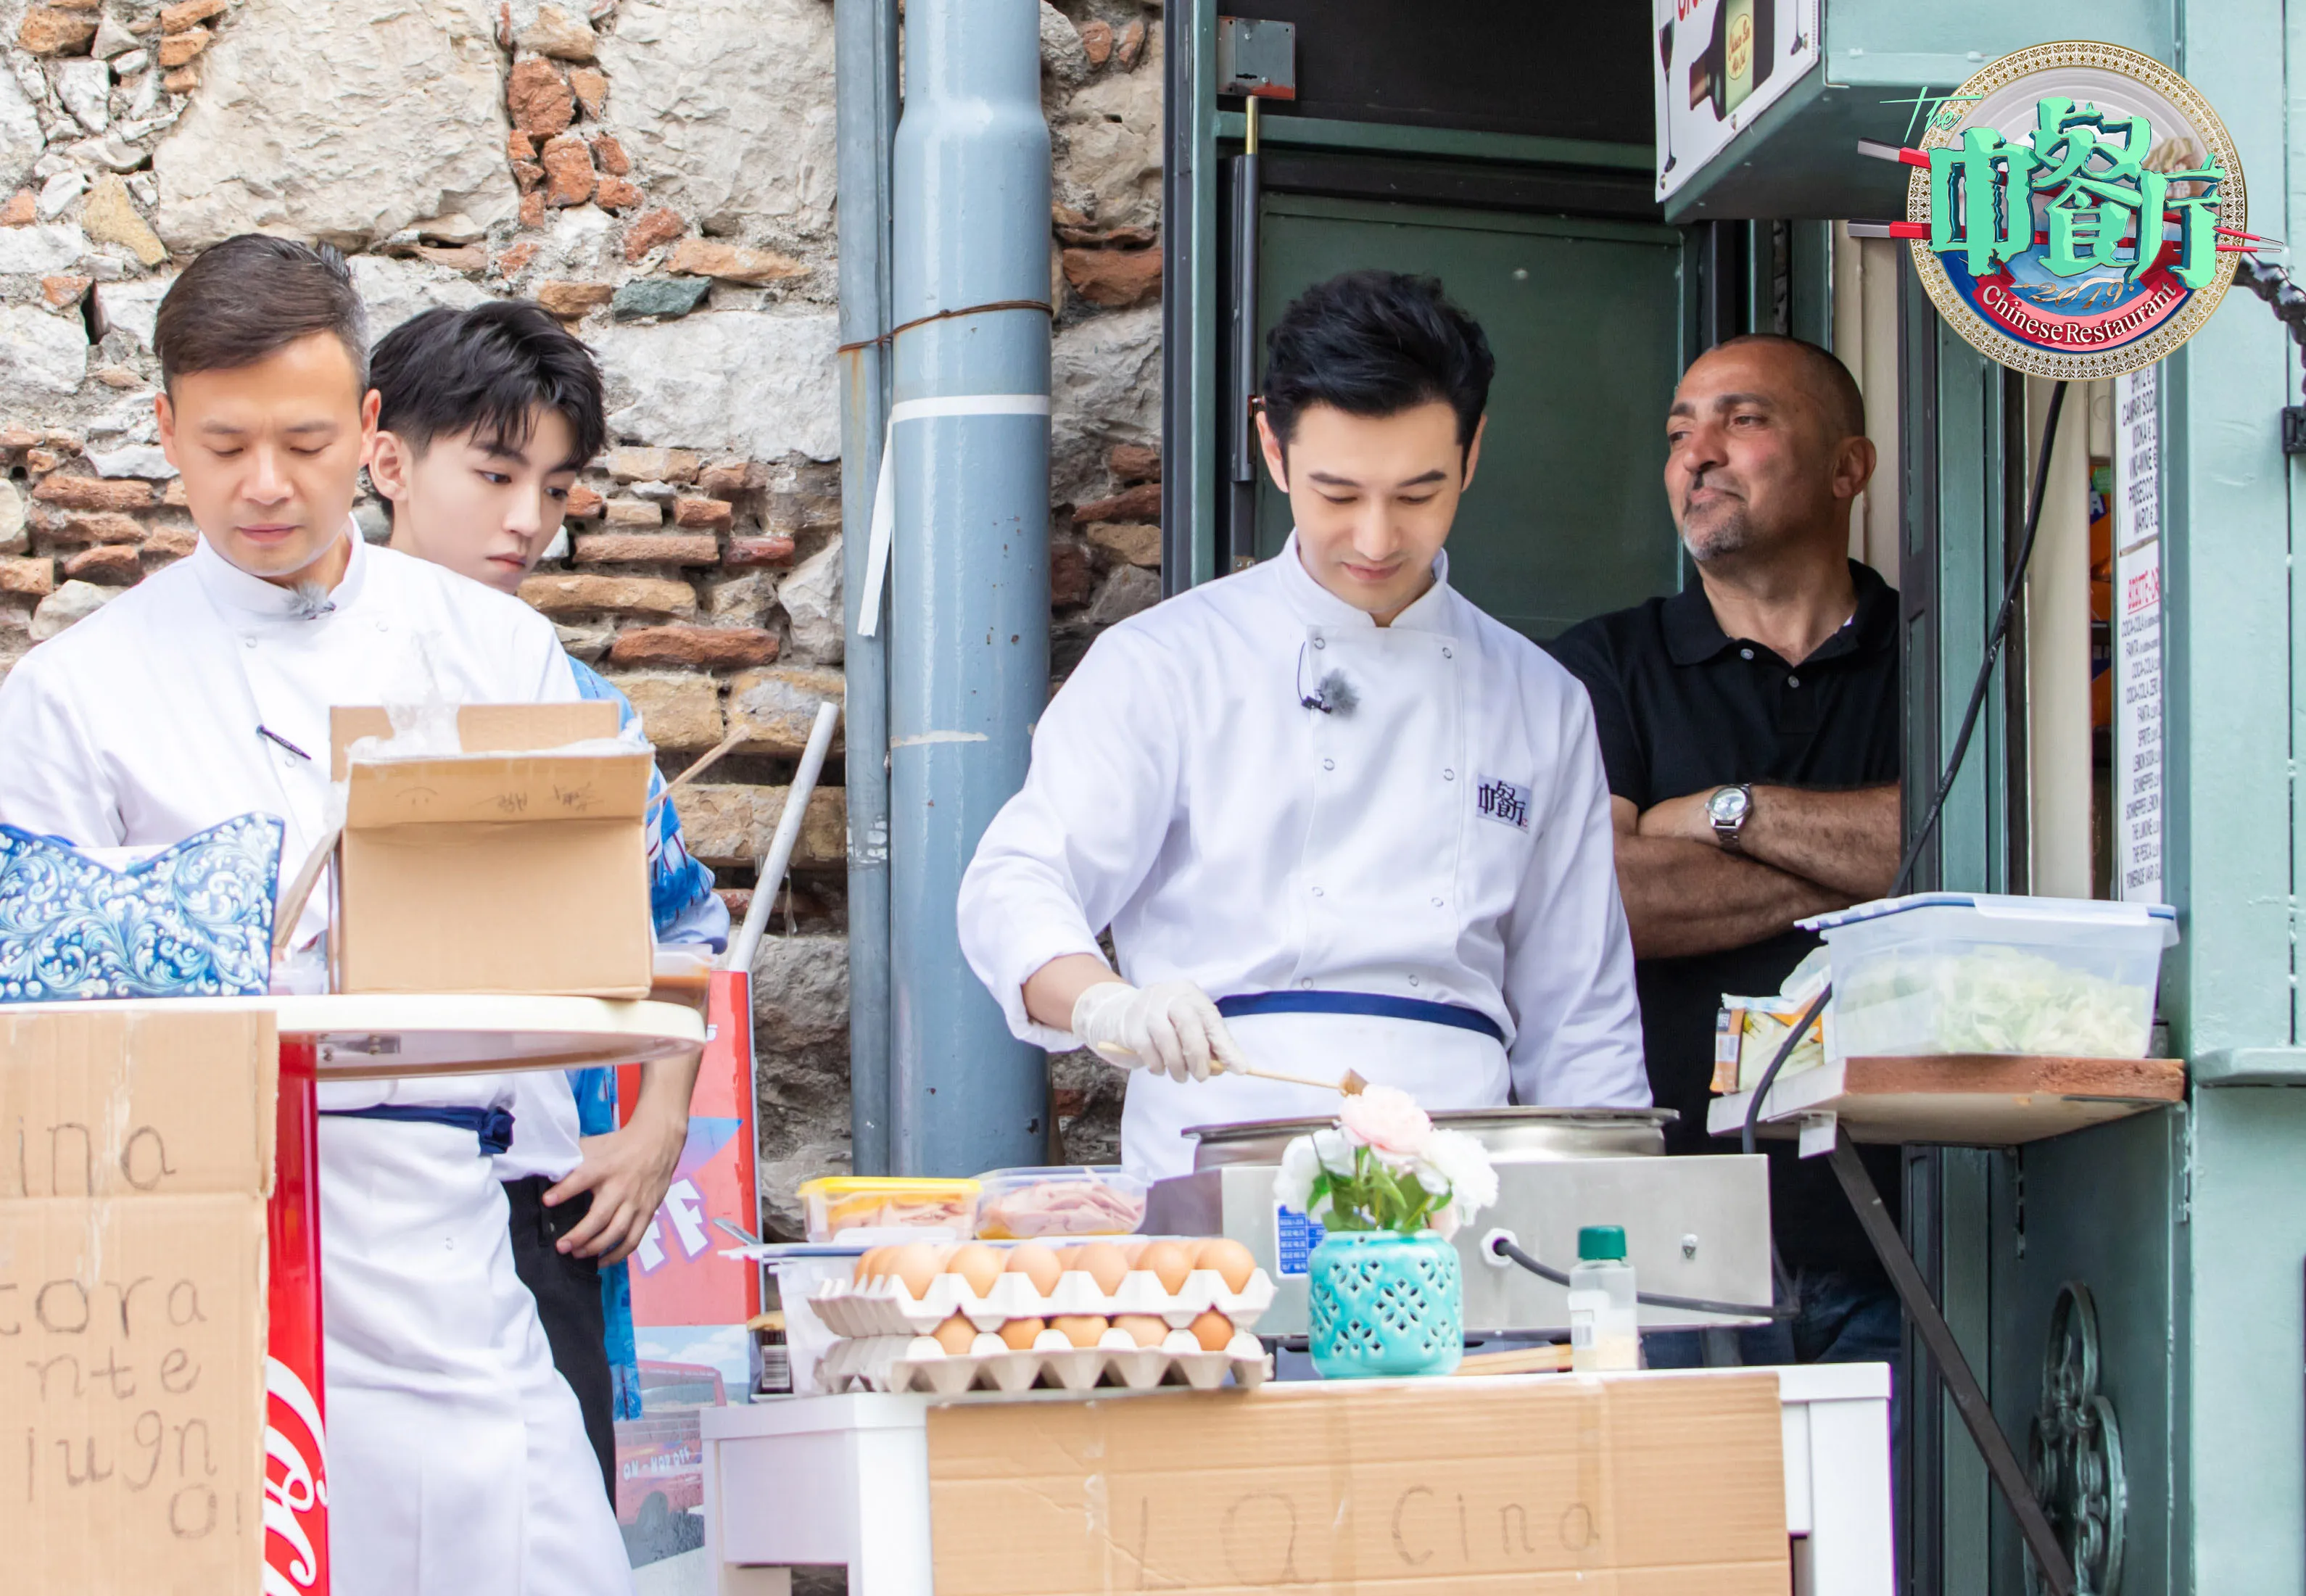  Xiaoming Huang 带领店员在街头摆摊卖煎饼.jpg